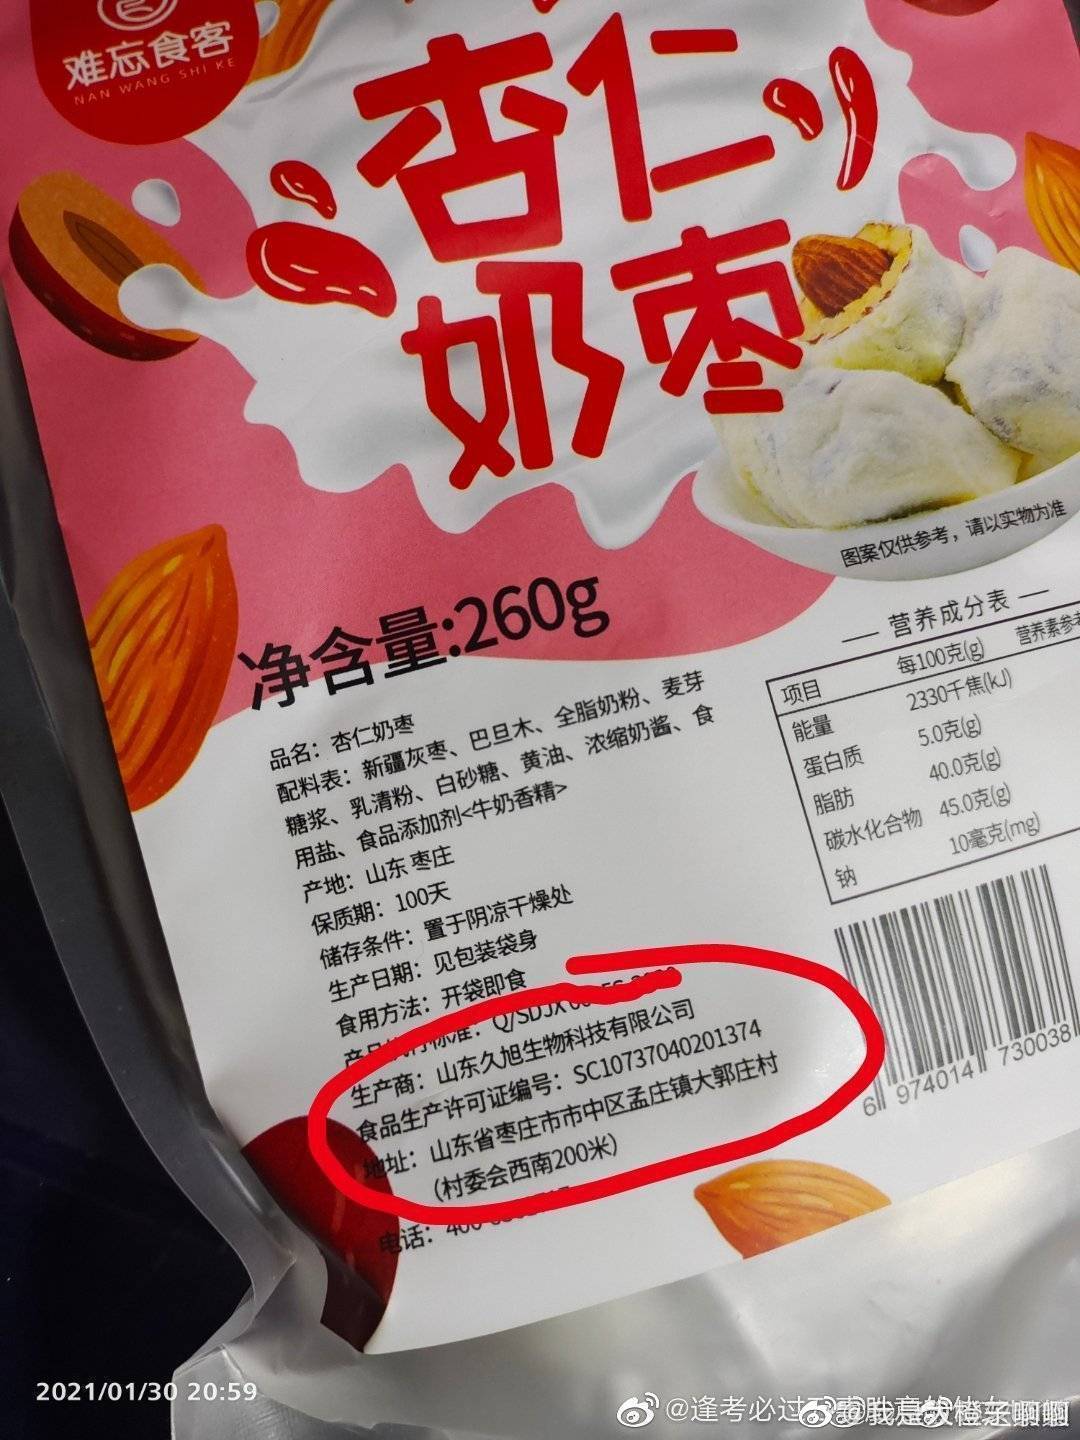 山东涉疫奶枣流入多地引警惕线上商家出示奶枣核酸检测报告